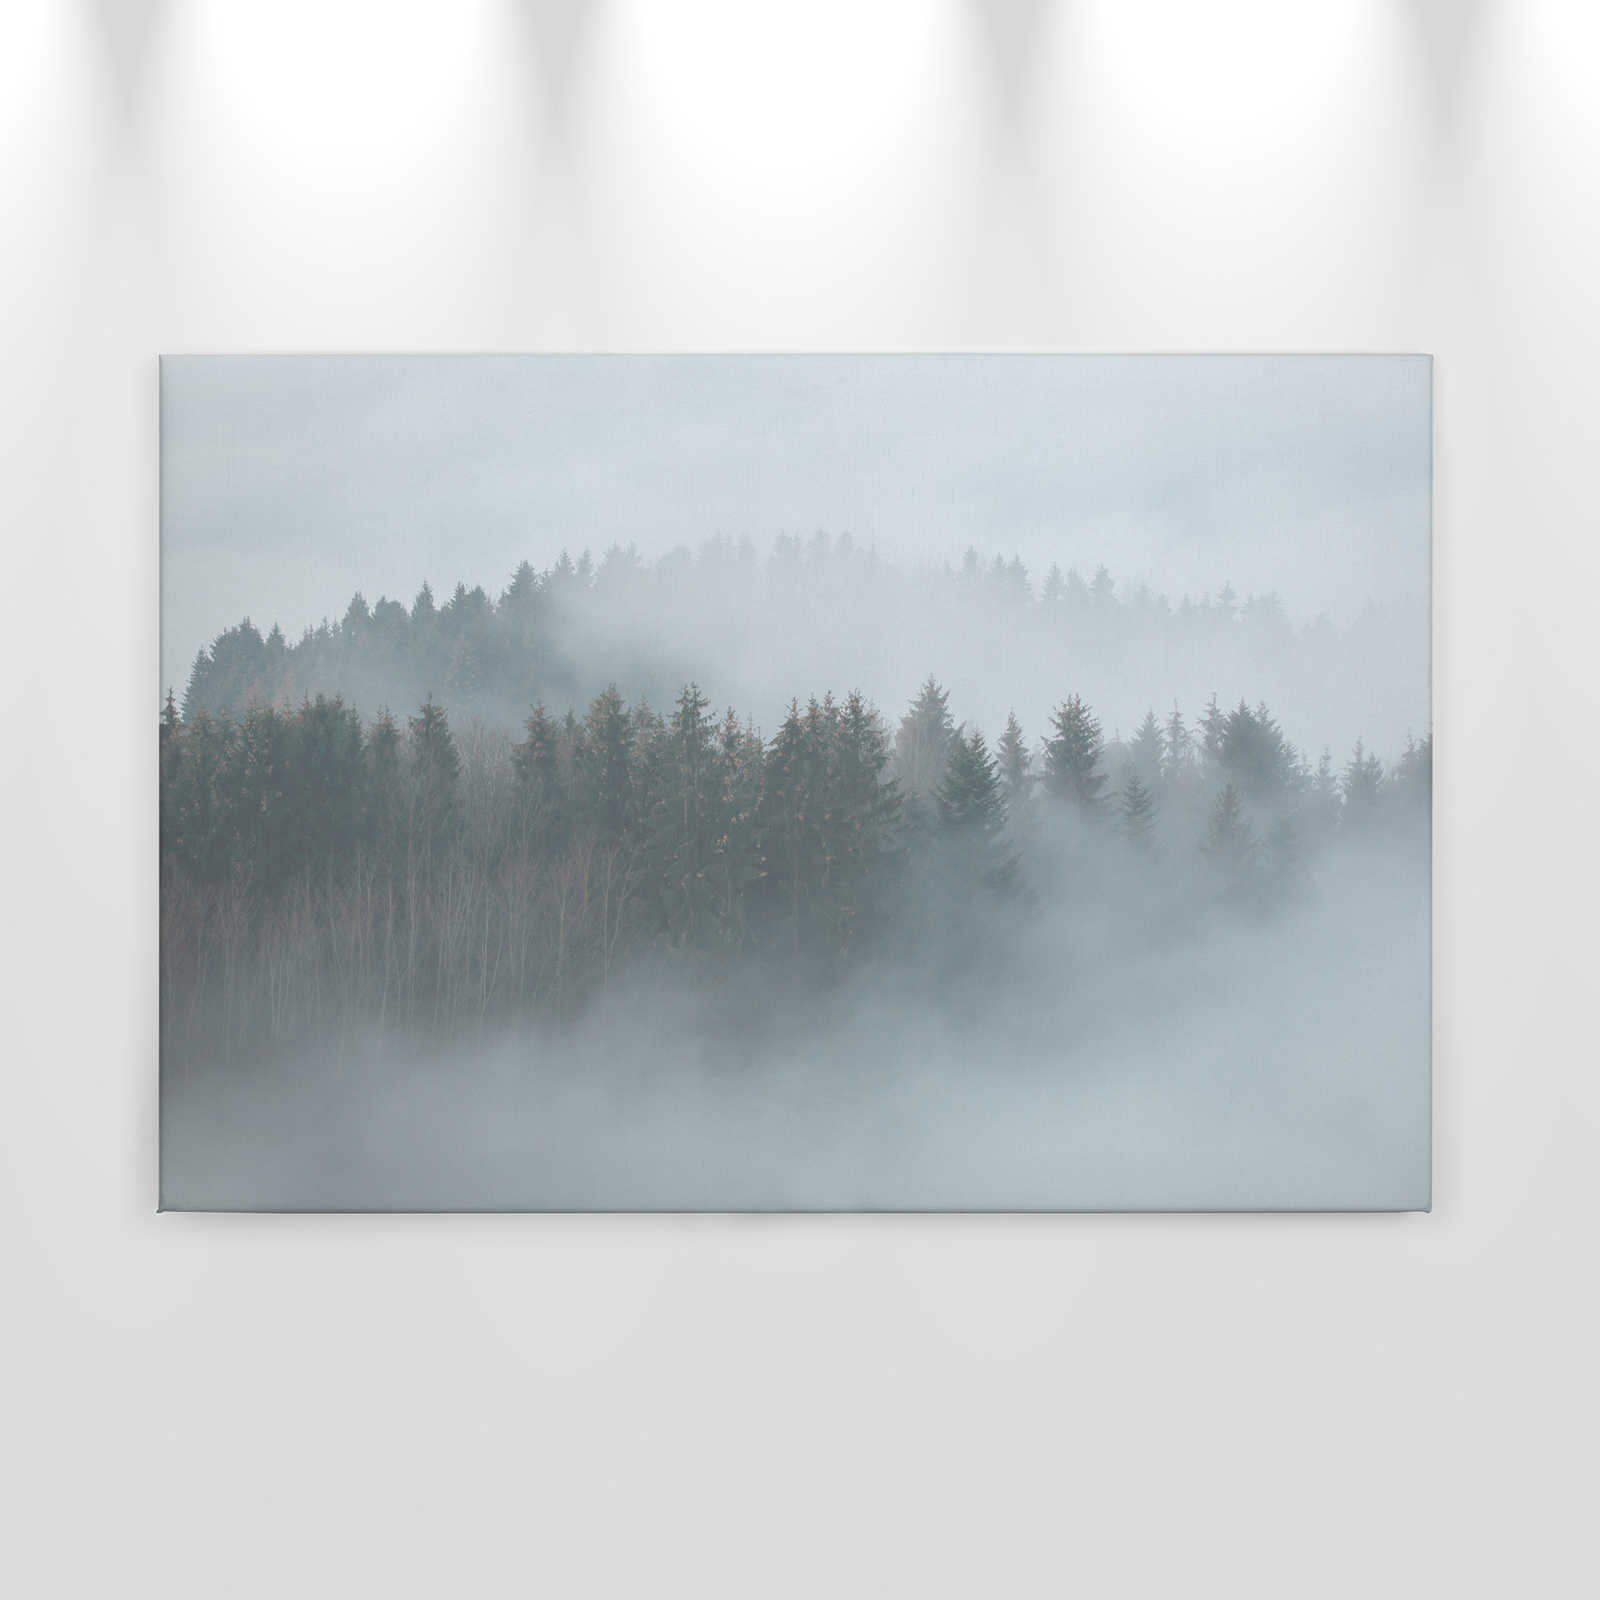             Toile avec forêt mystérieuse dans le brouillard - 0,90 m x 0,60 m
        